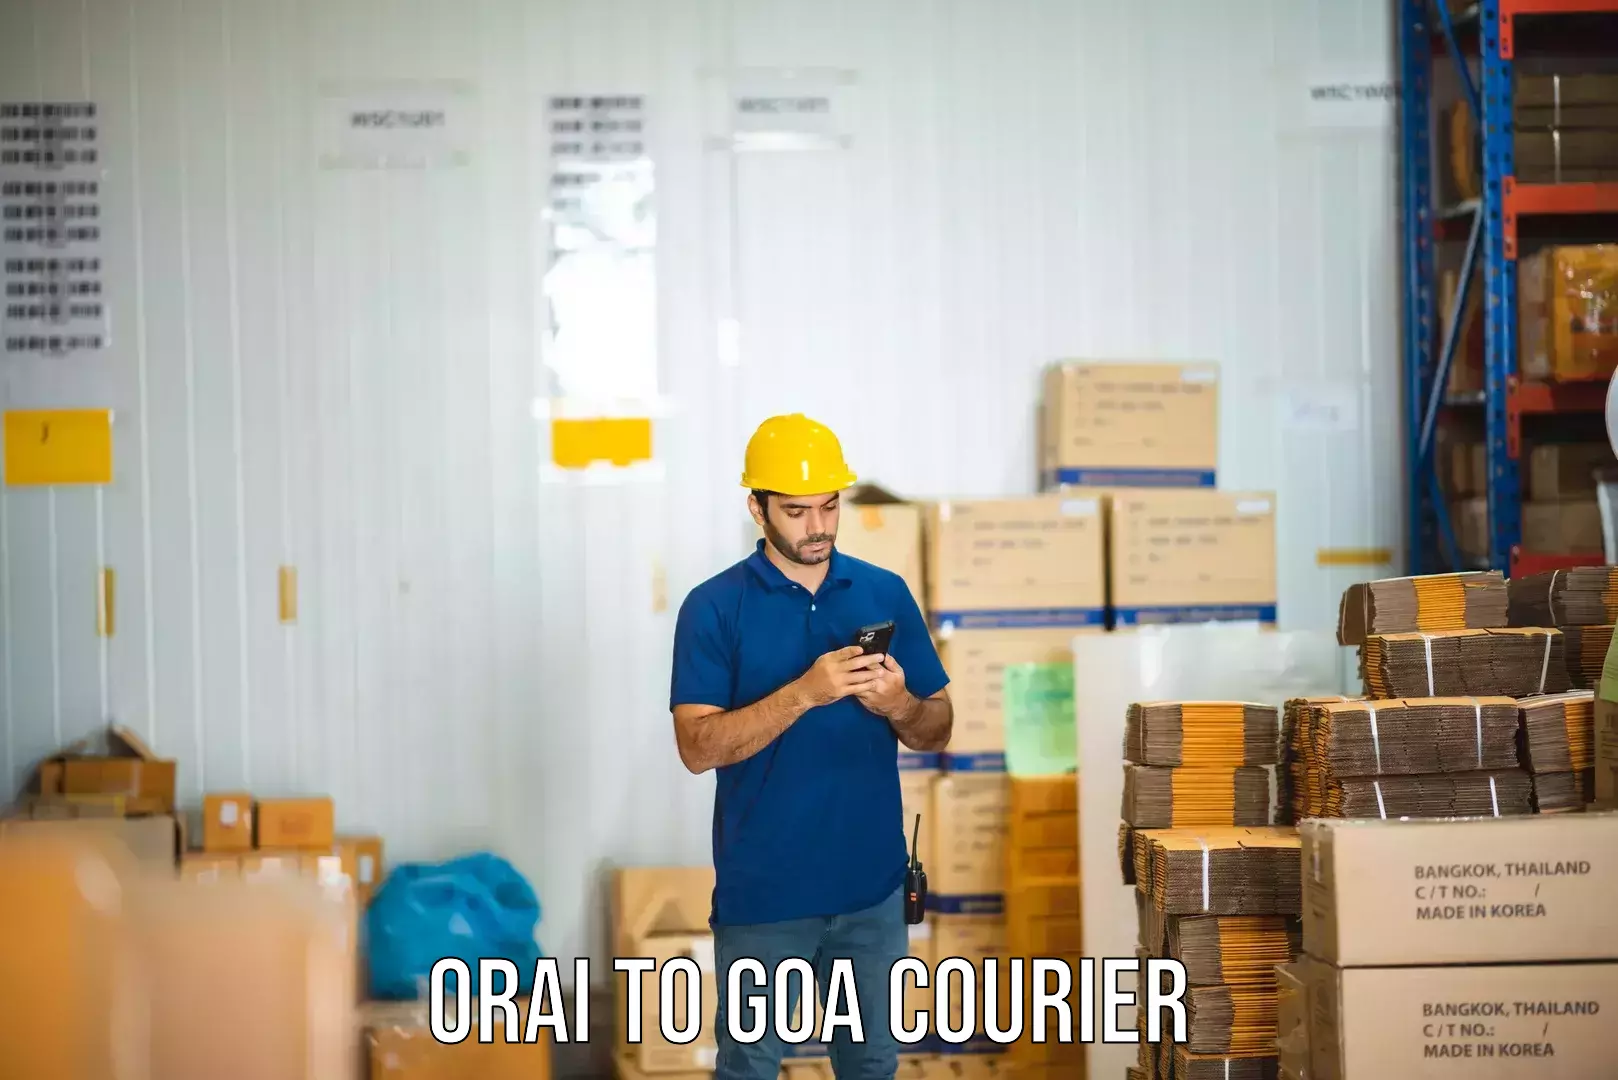 Business courier solutions Orai to Vasco da Gama